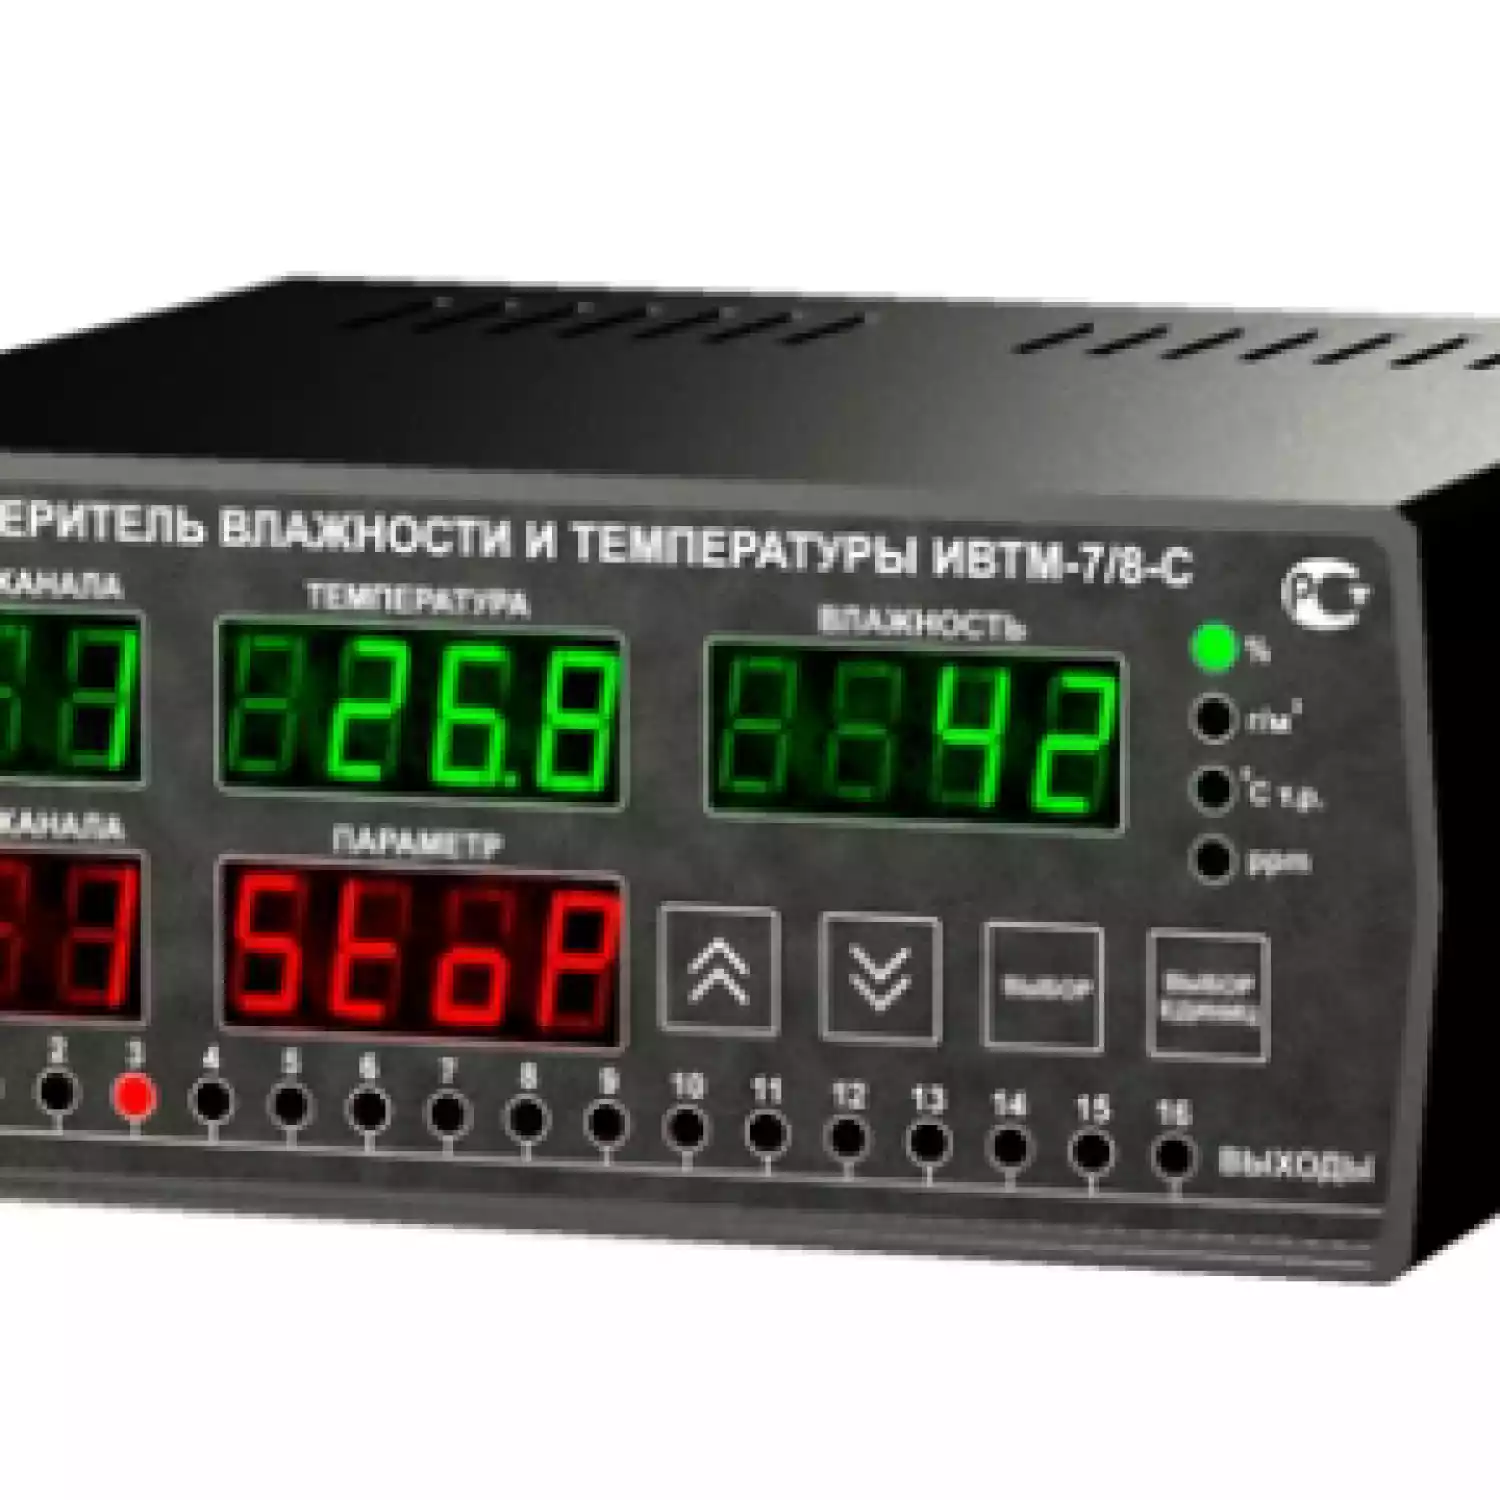 Термогигрометр ИВТМ-7/8-С-16Р - 1